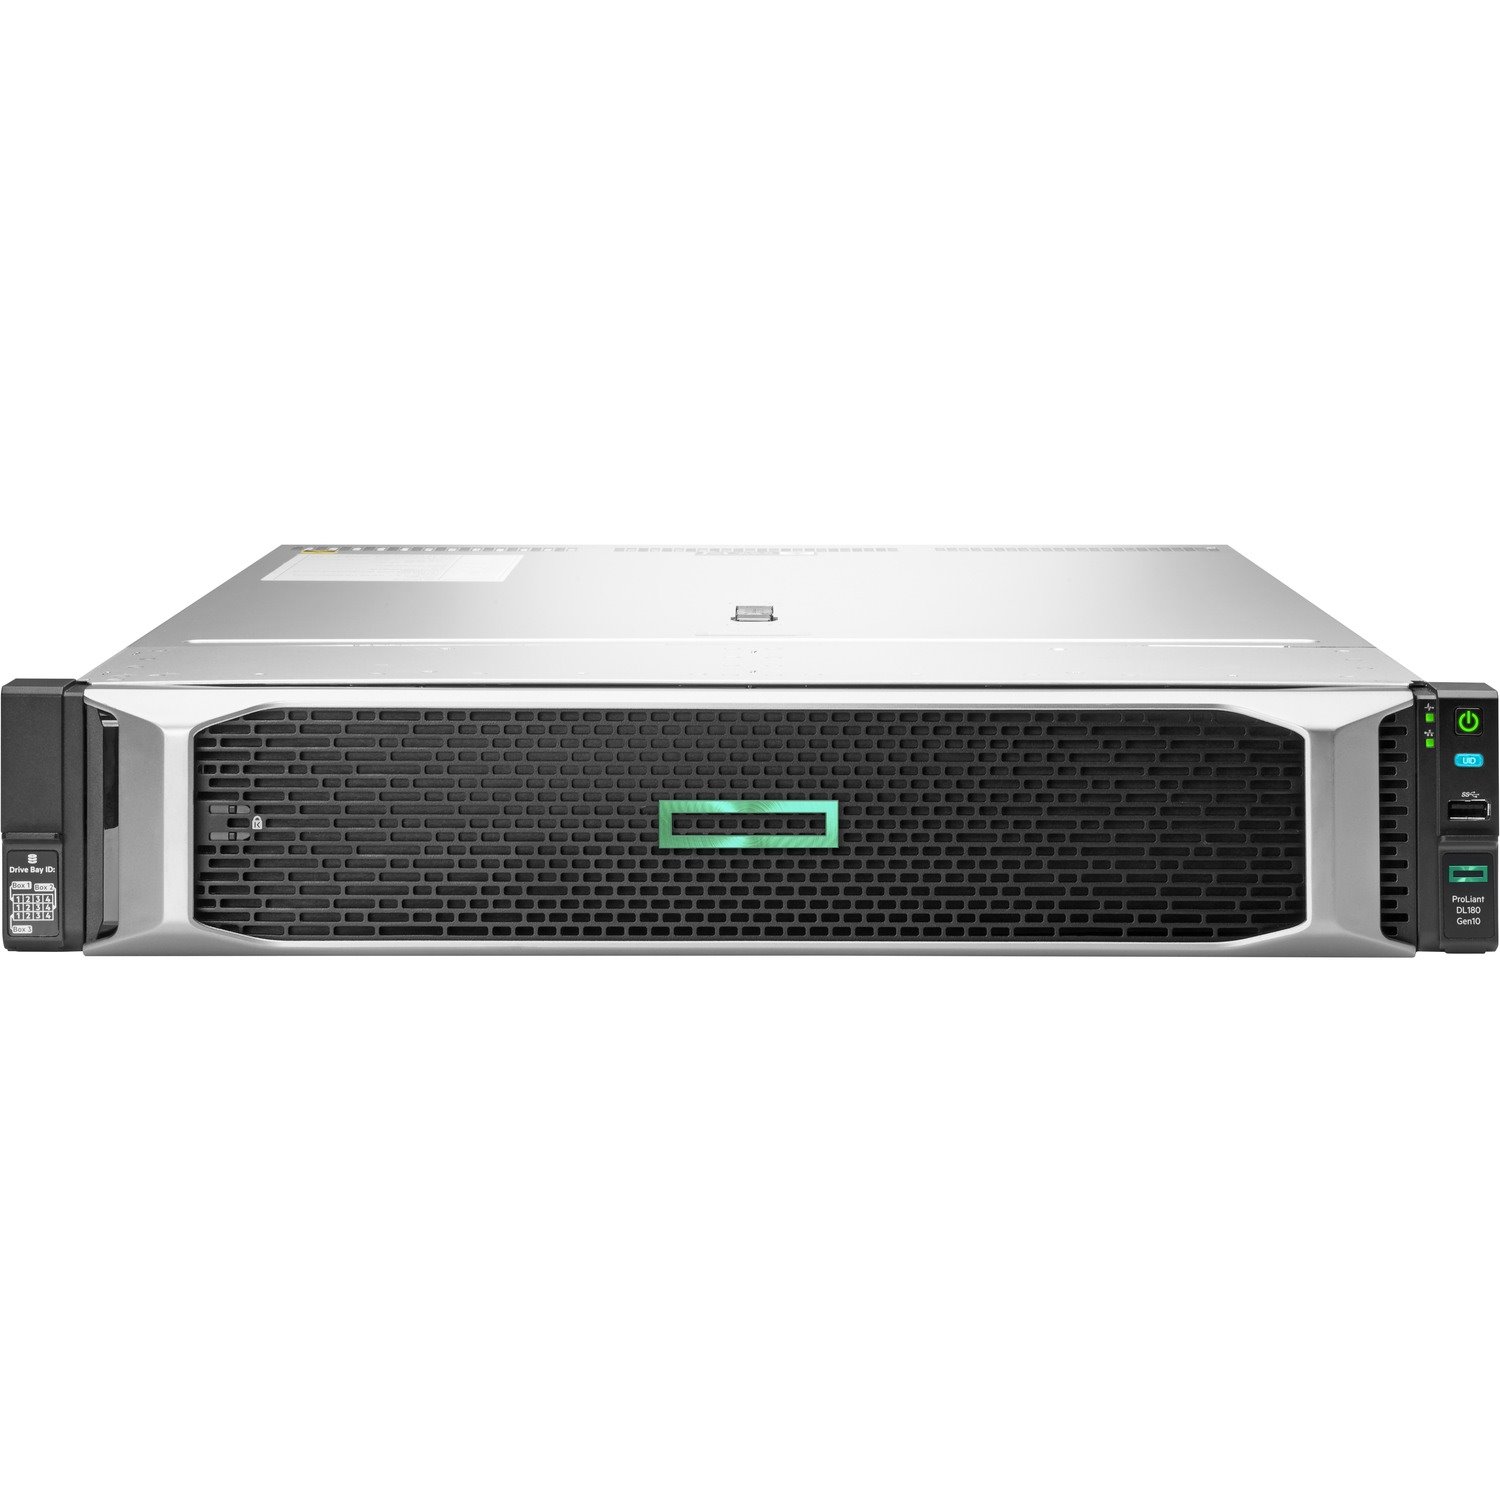 HPE ProLiant DL180 G10 2U Rack Server - 1 x Intel Xeon Silver 4208 2.10 GHz - 16 GB RAM - Serial ATA/600 Controller